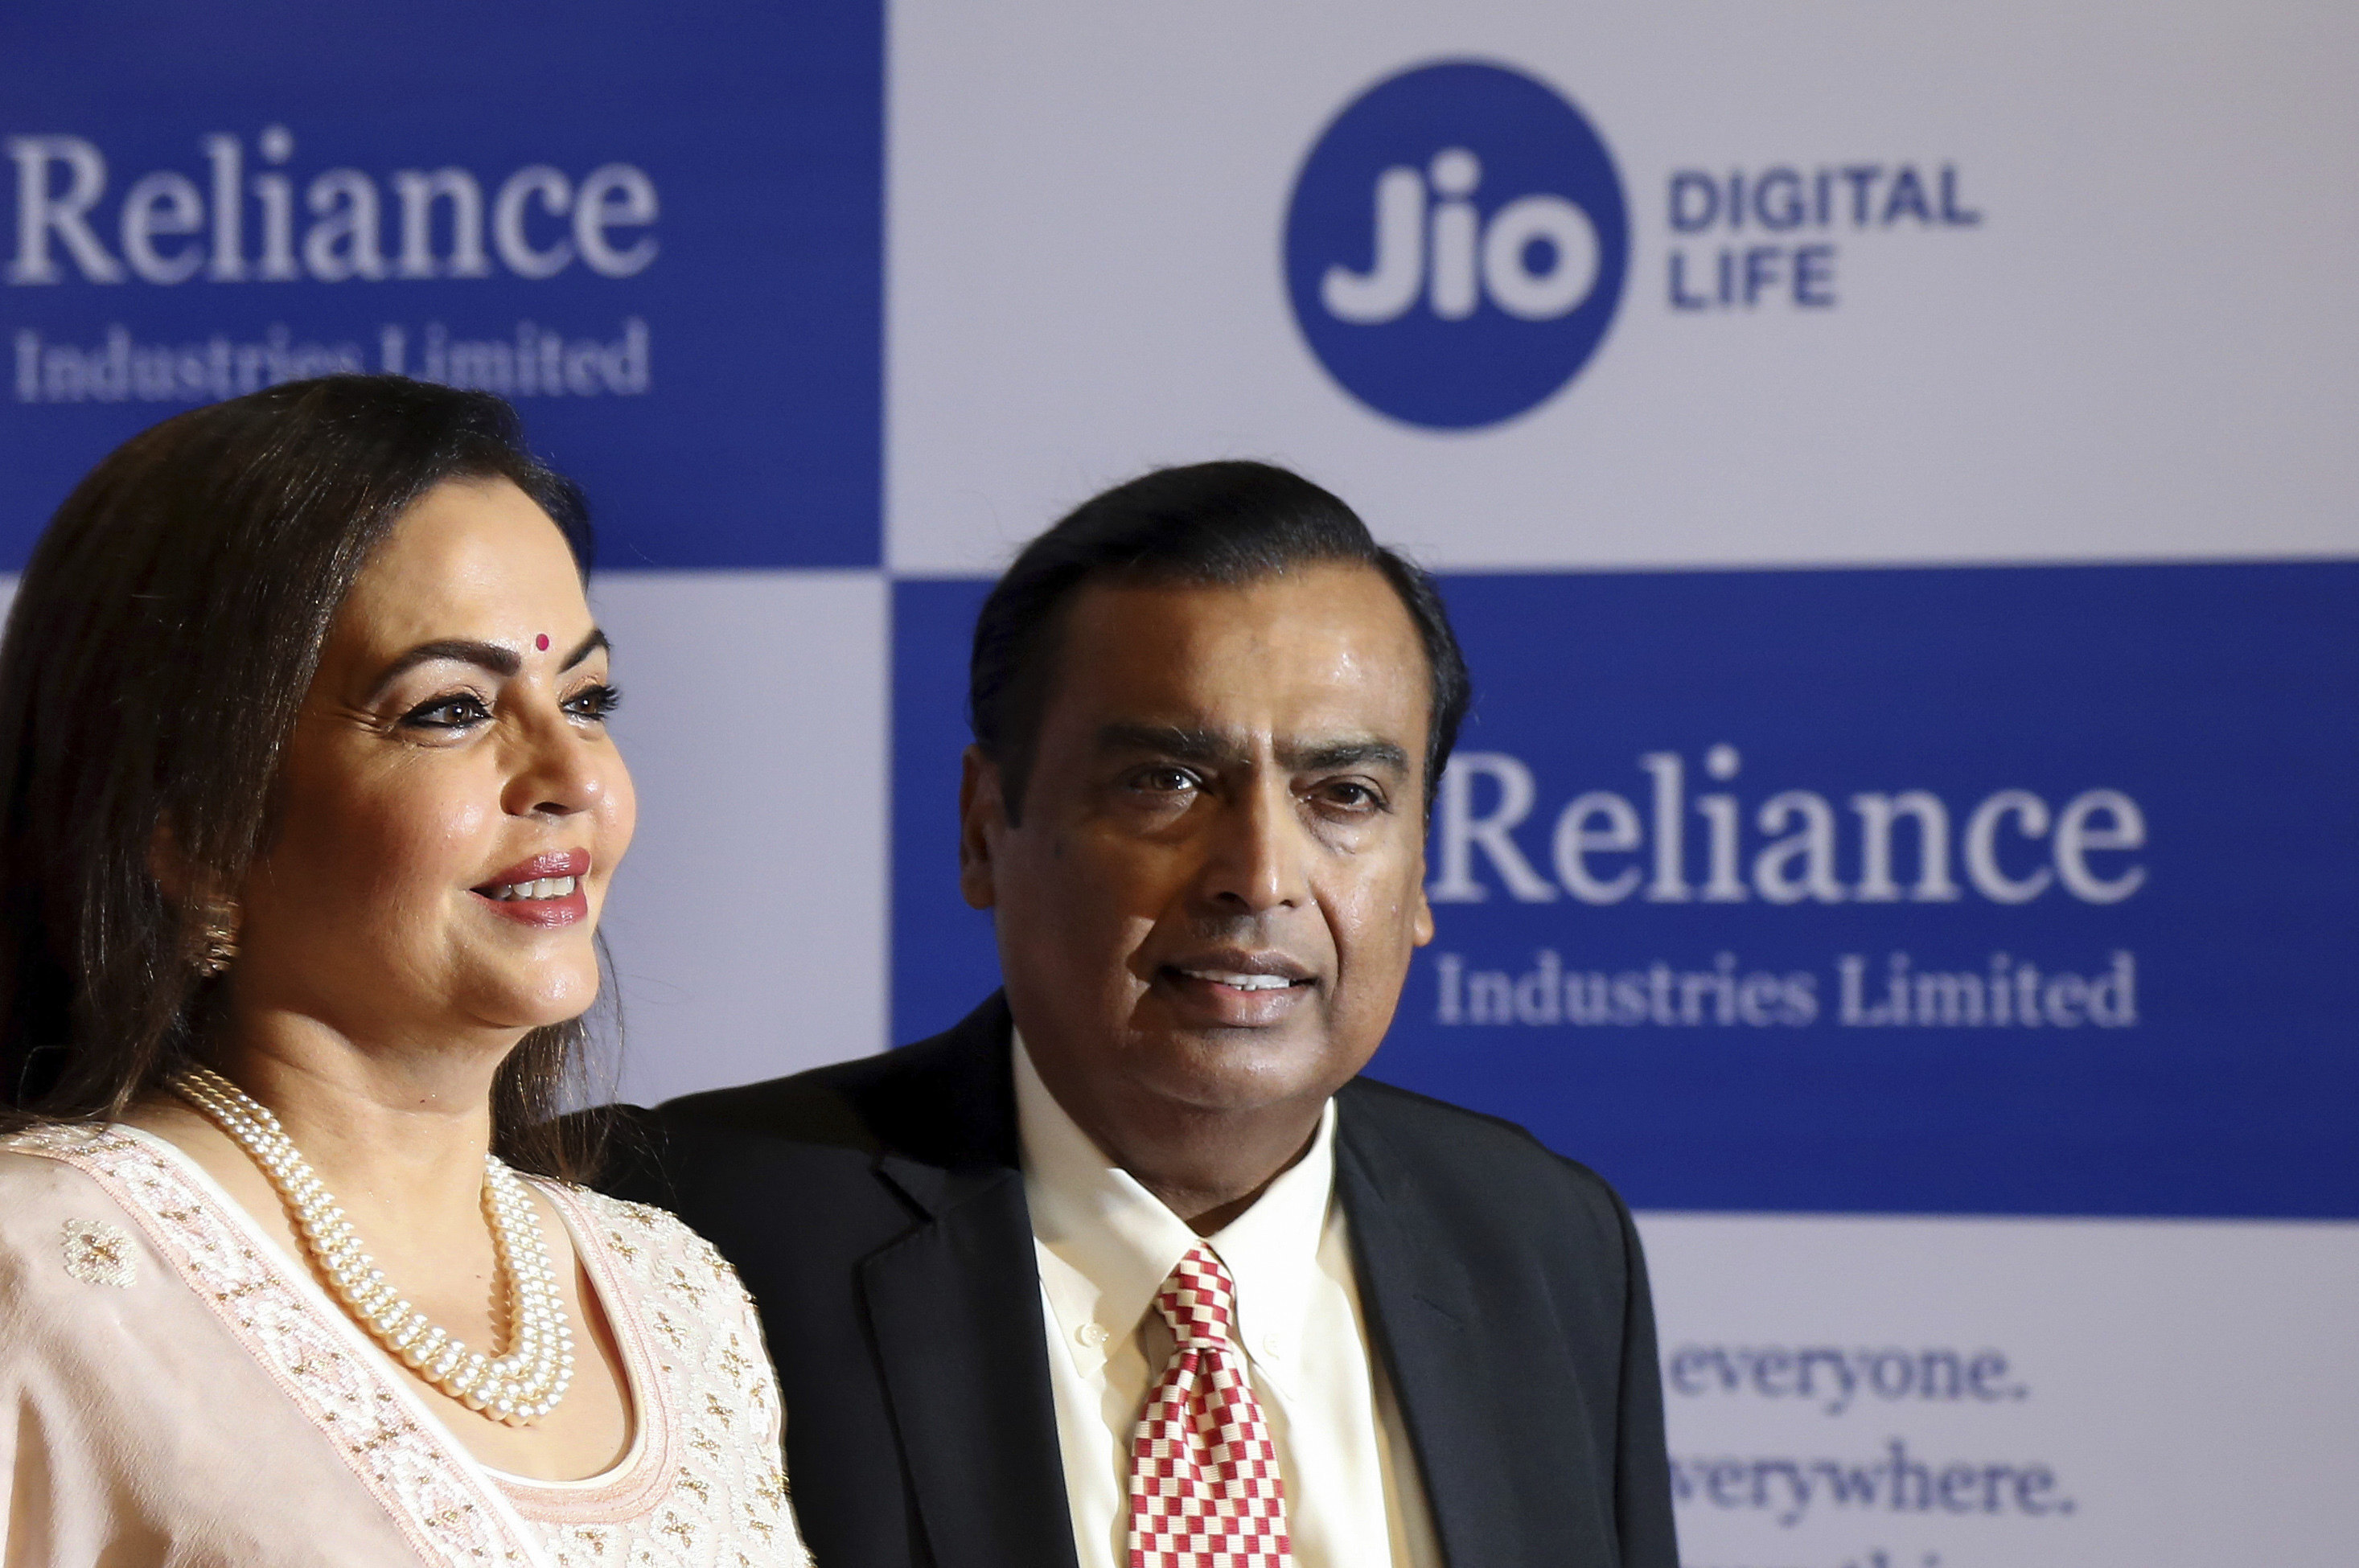 Chairman of Reliance Industries Limited Mukesh Ambani pictured with wife Neeta Ambani. File photo: AP